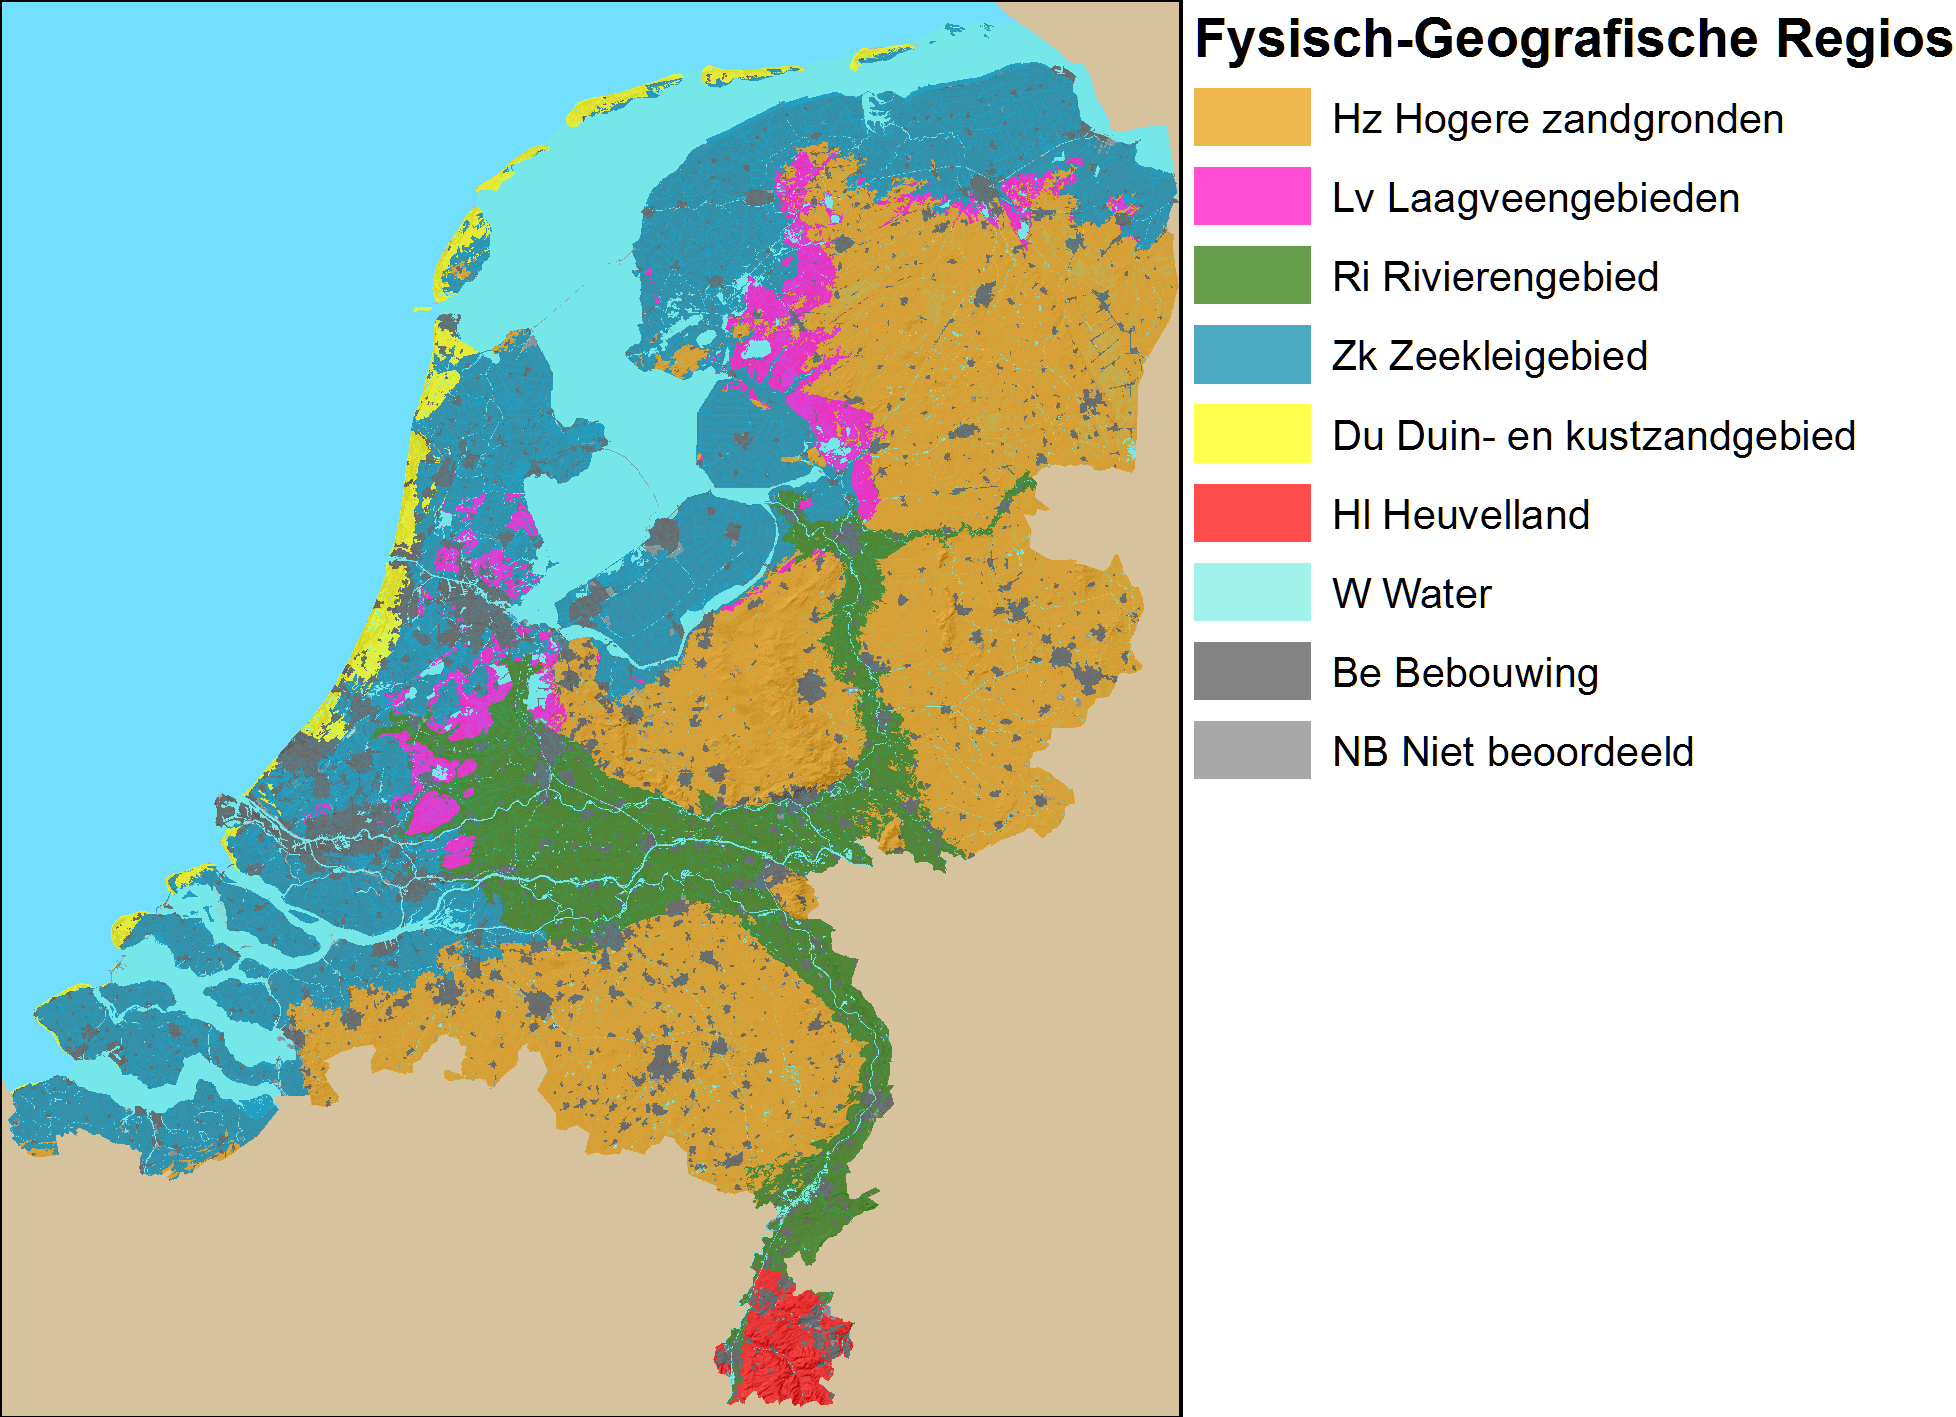 De verbreiding van de Fysisch-Geografische Regio’s in Nederland